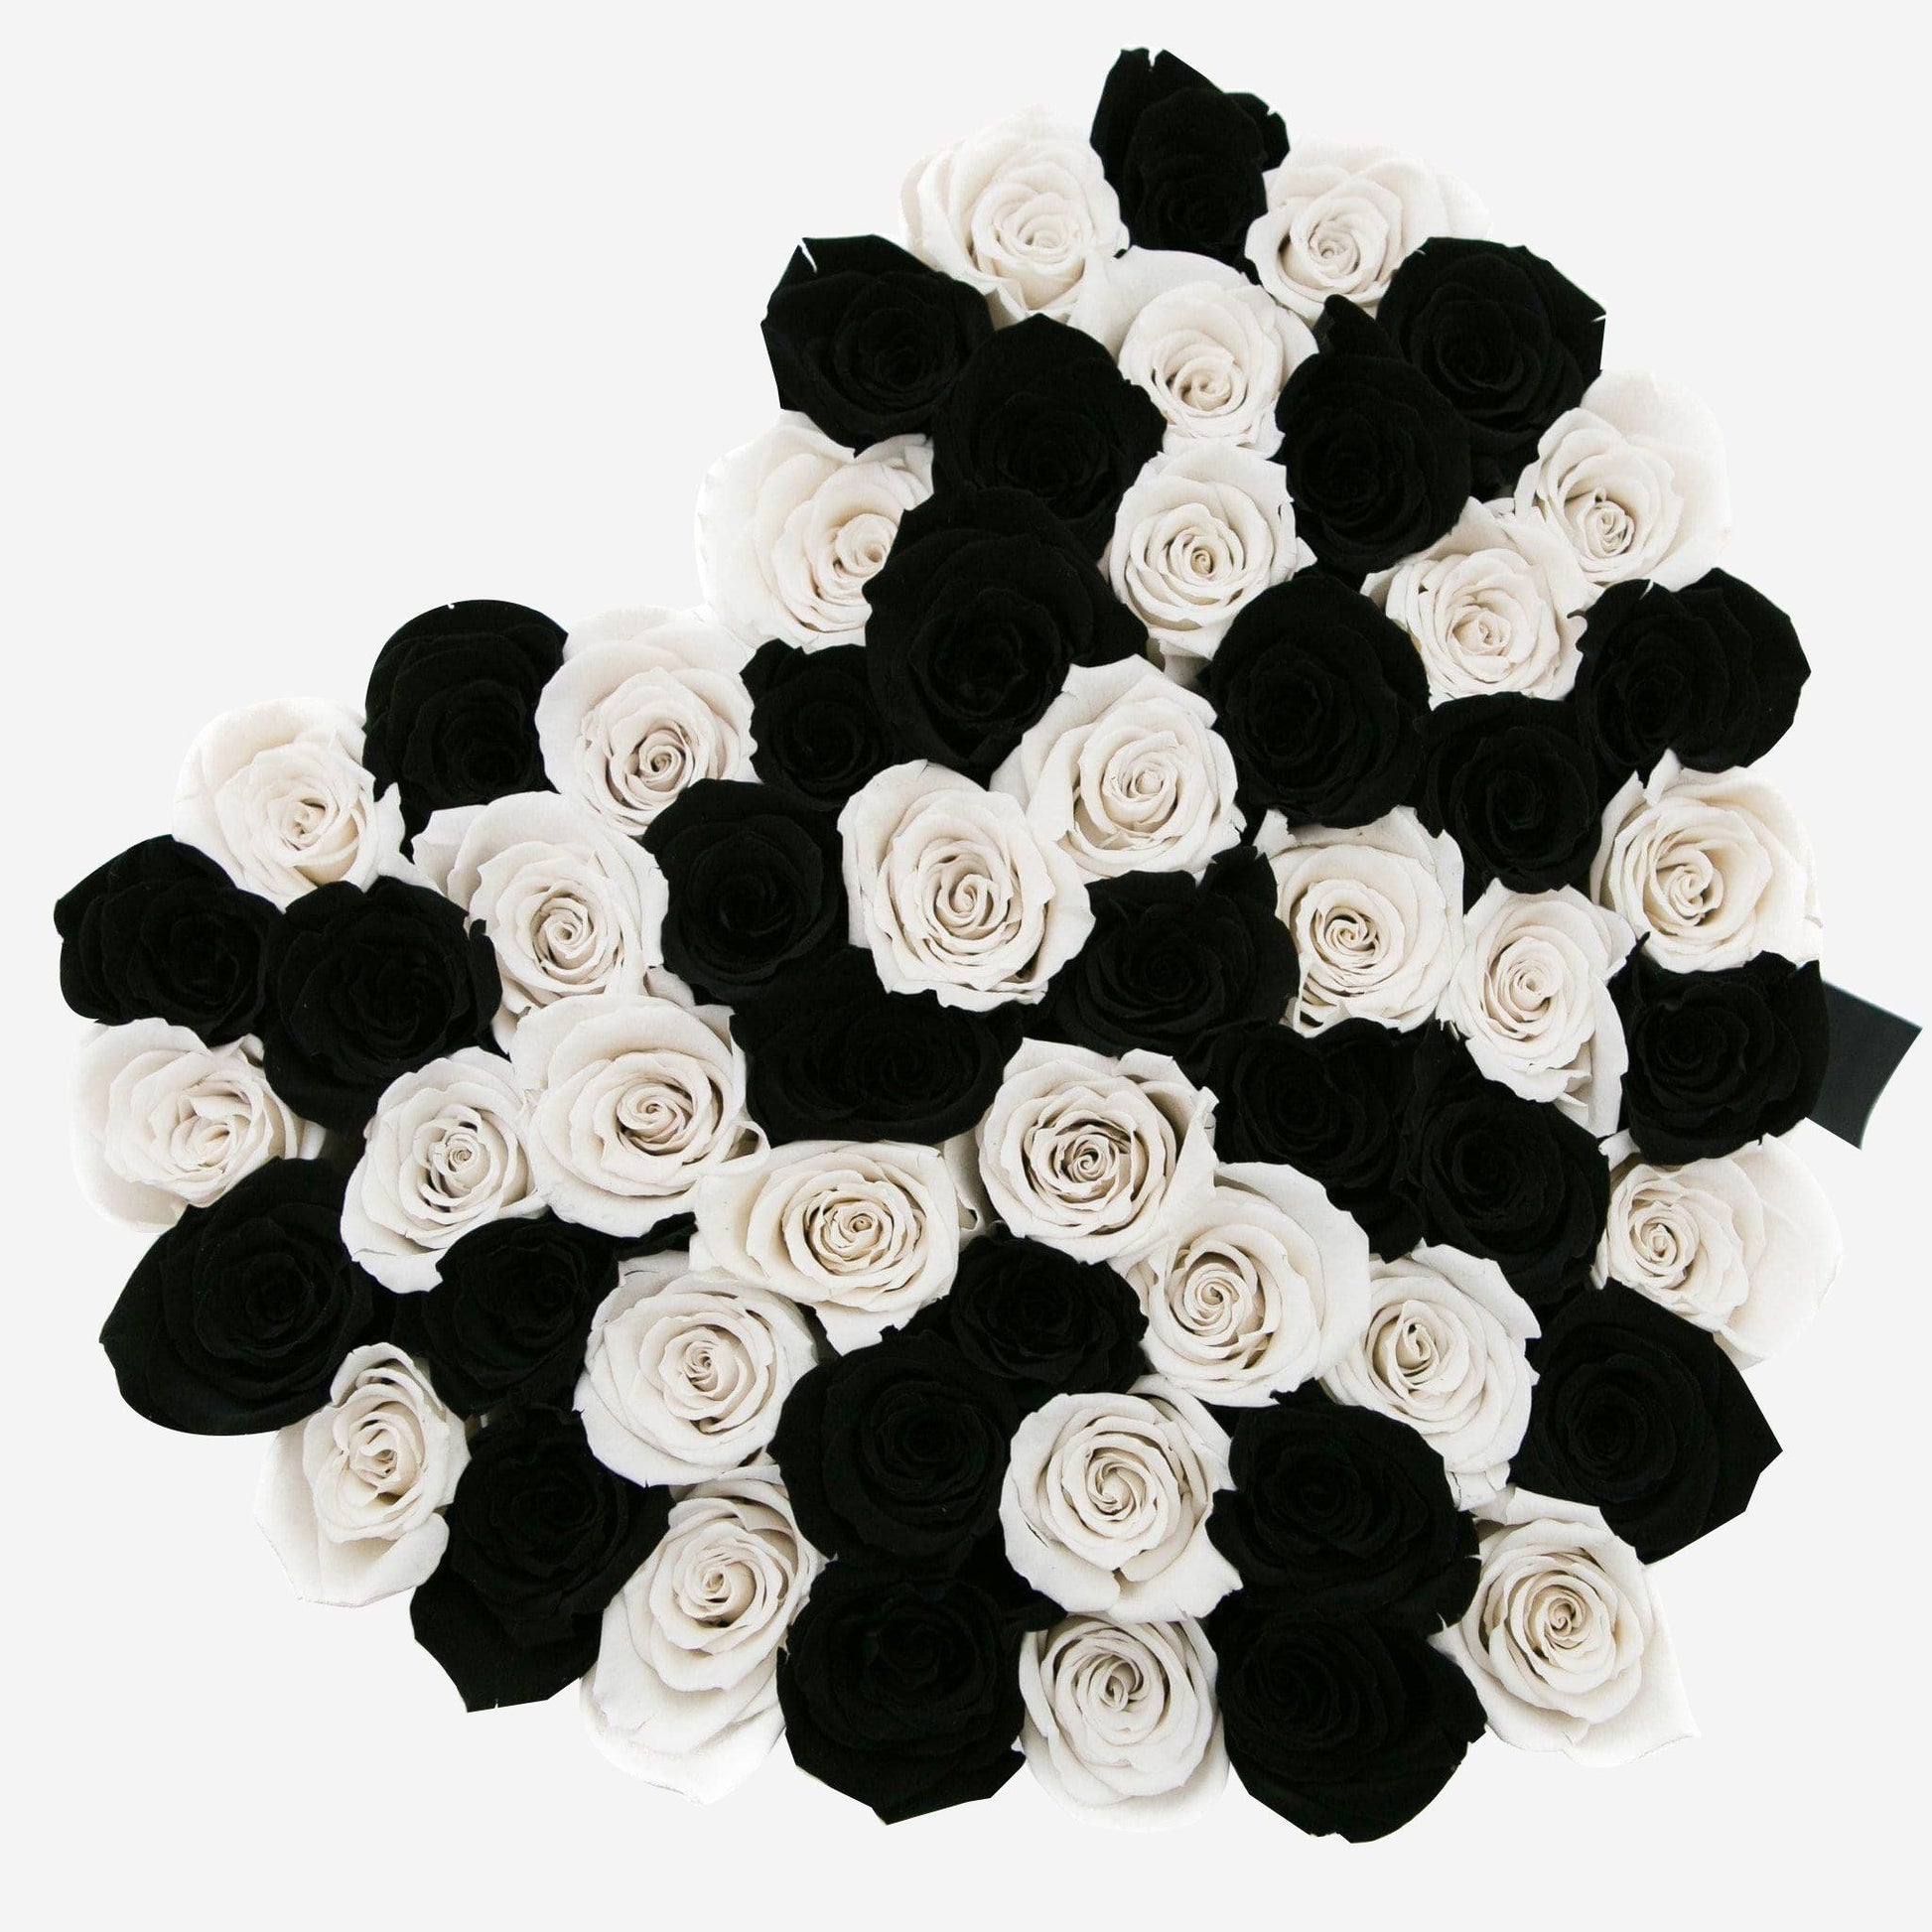 Heart White Box | Black & White Roses - The Million Roses